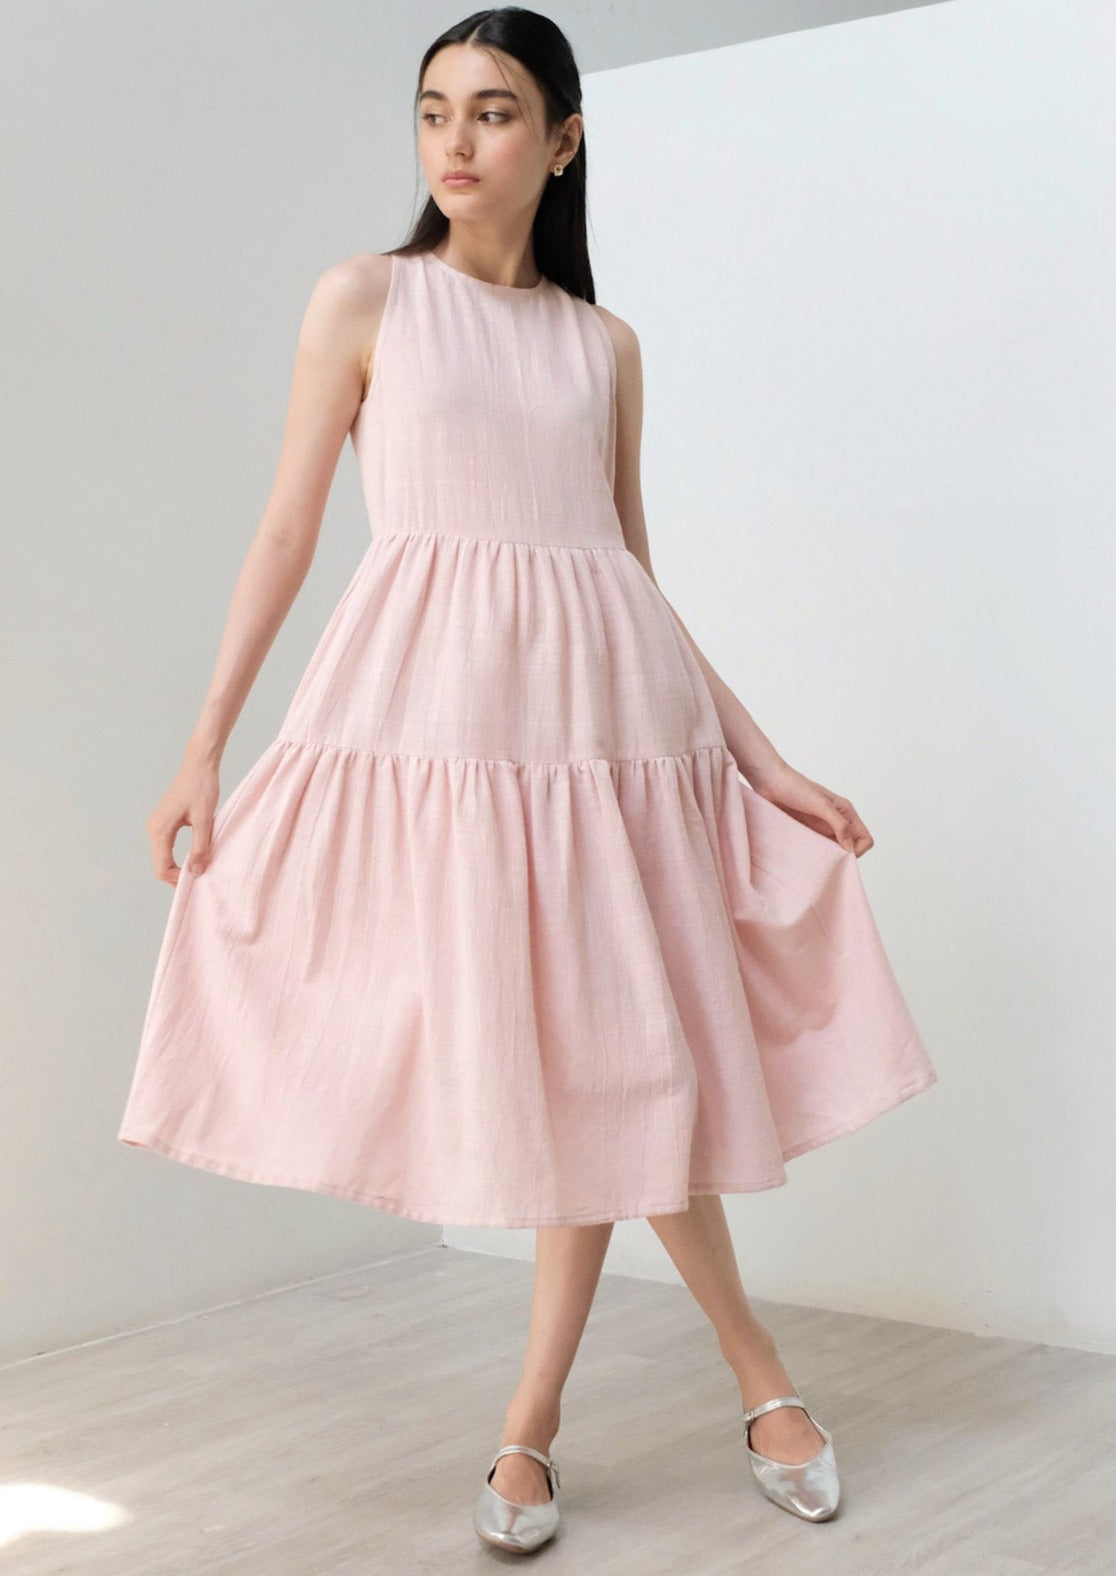 Cataleya Dress In Pink (1 LEFT)